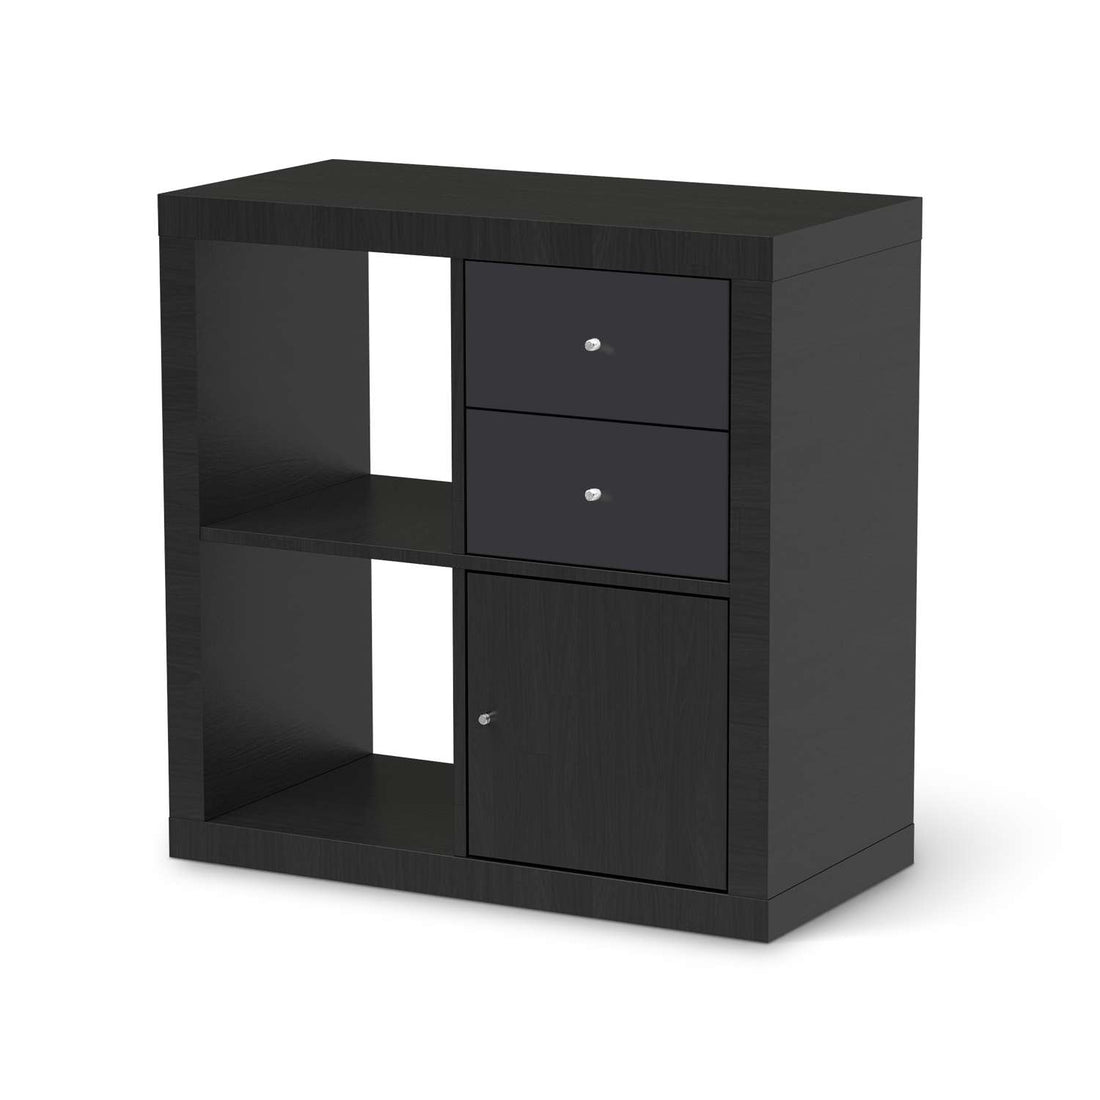 Möbelfolie IKEA Grau Dark - IKEA Expedit Regal Schubladen - schwarz